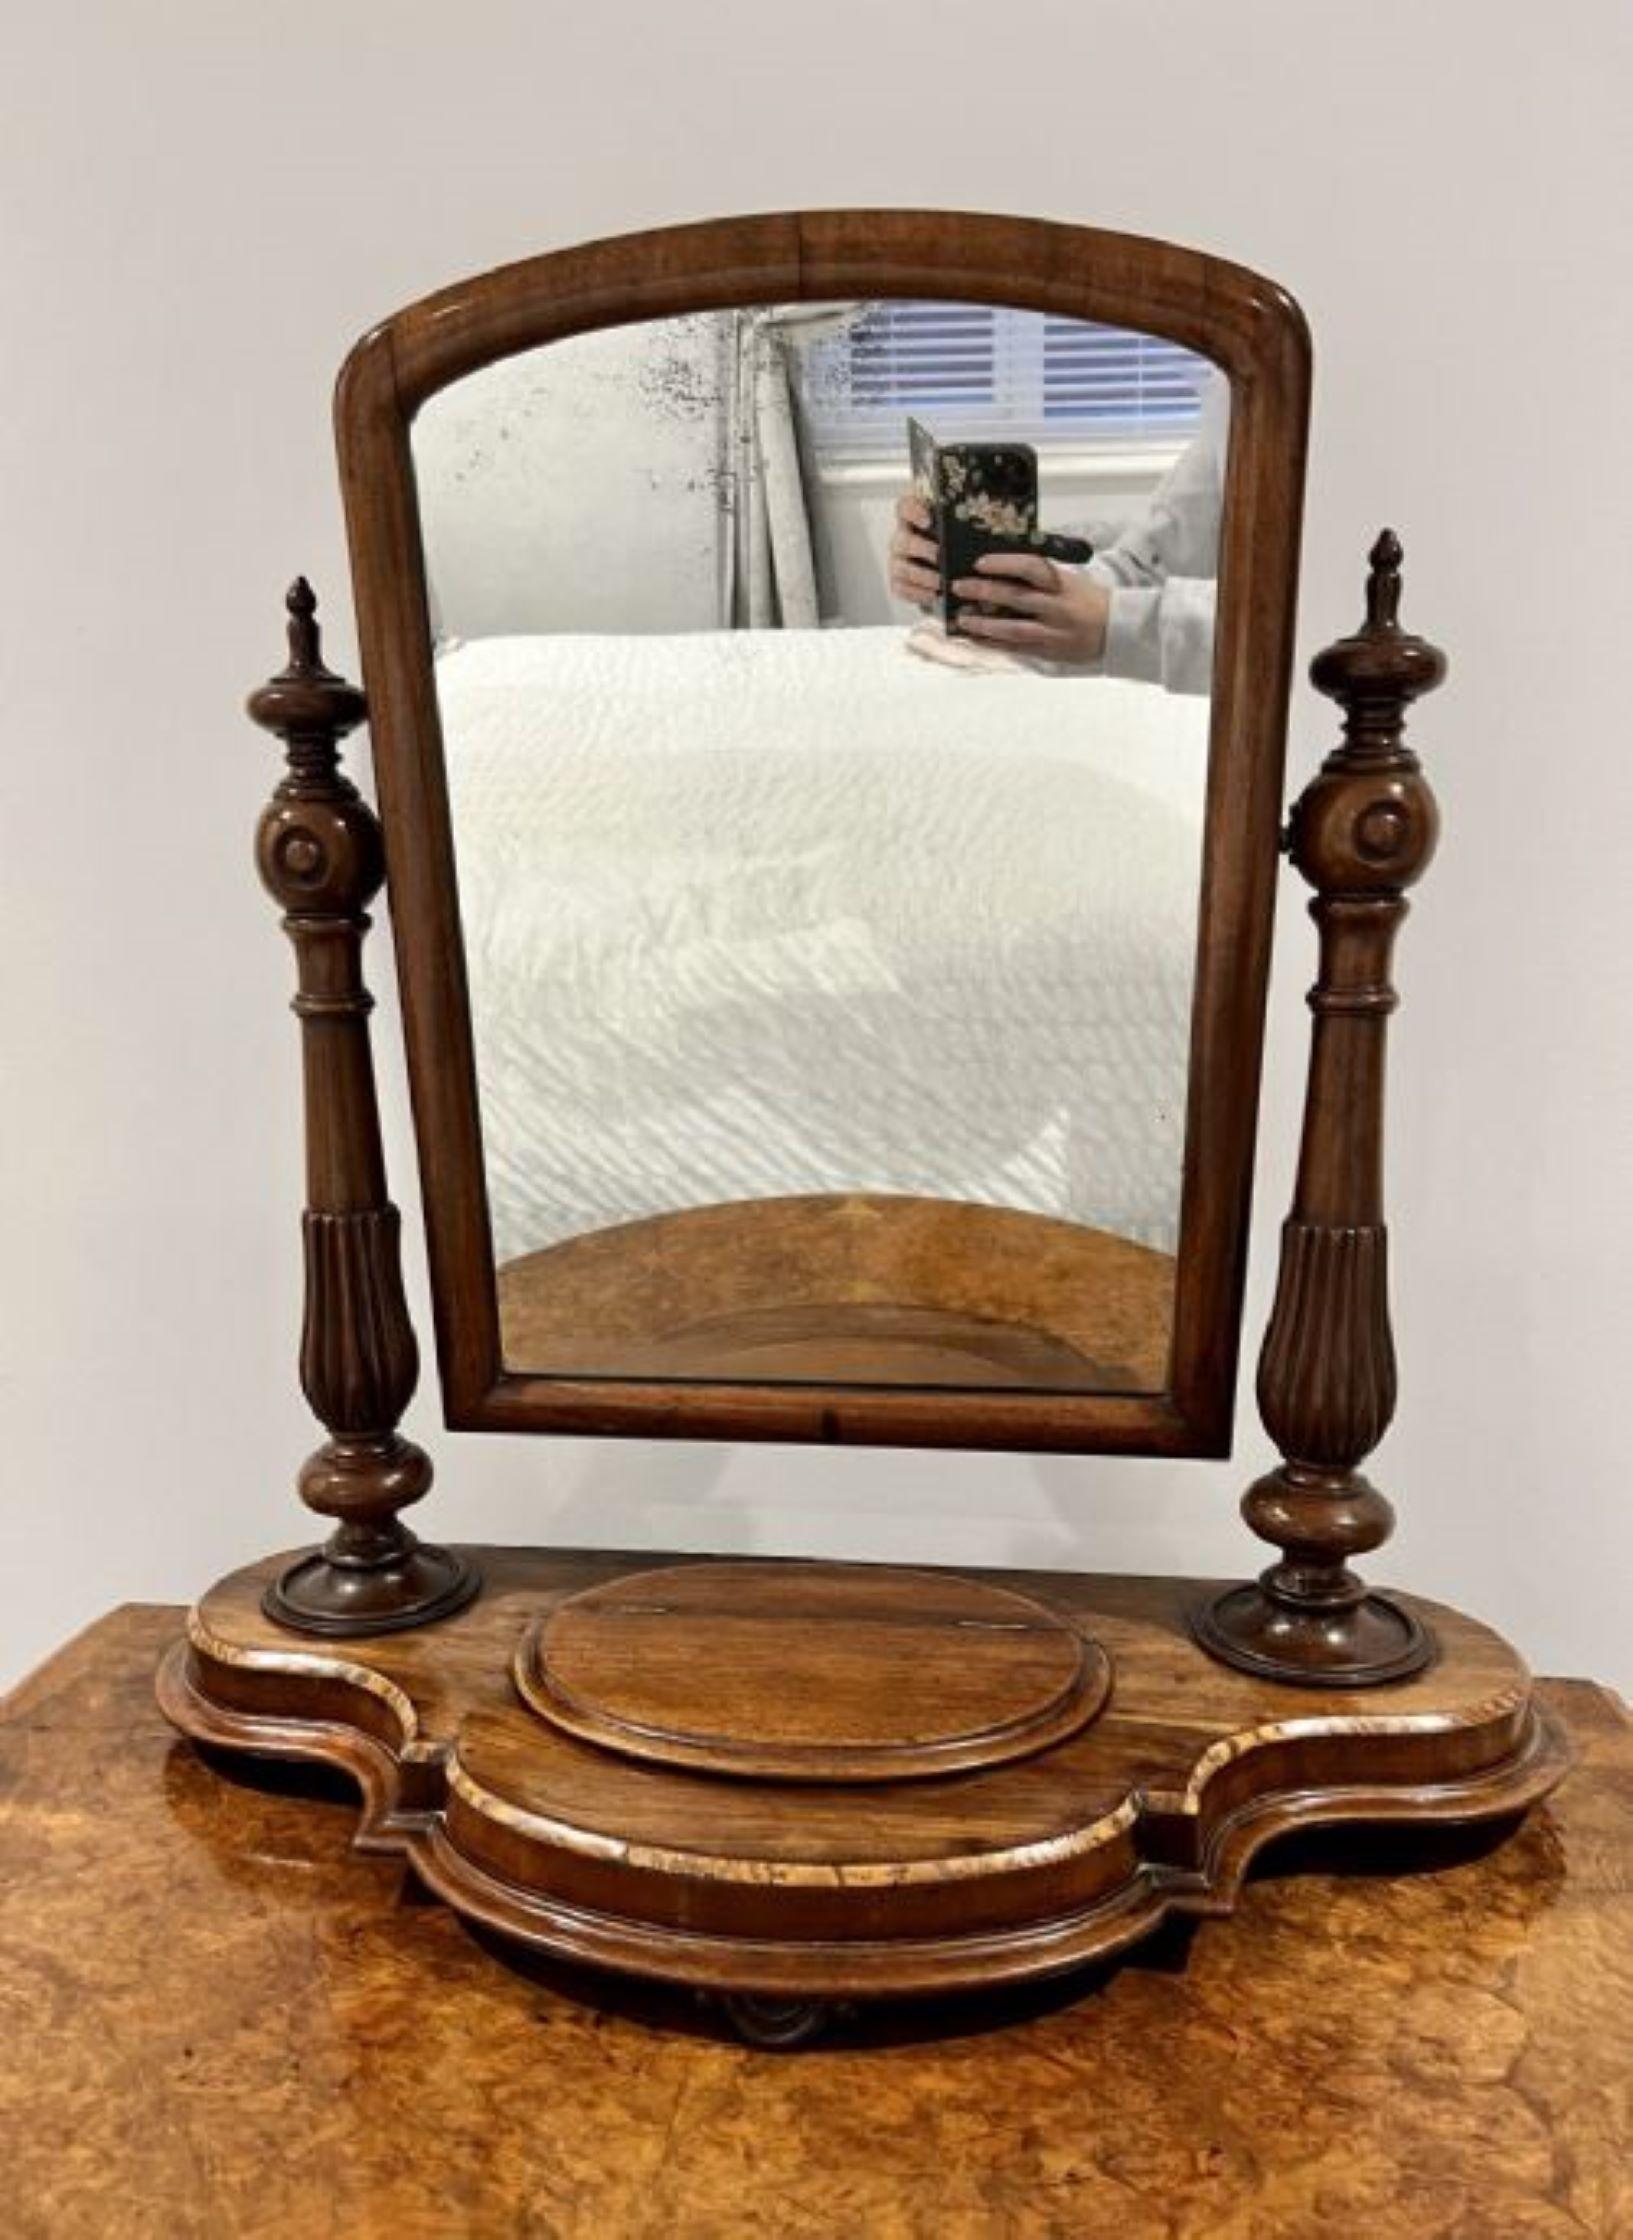 Antike viktorianische Qualität Mahagoni Schminktisch Spiegel mit einer Qualität antiken viktorianischen Mahagoni Schminktisch Spiegel mit einem einstellbaren Kippen Spiegel durch Mahagoni geschnitzt gedreht verjüngt unterstützt auf einem Serpentin